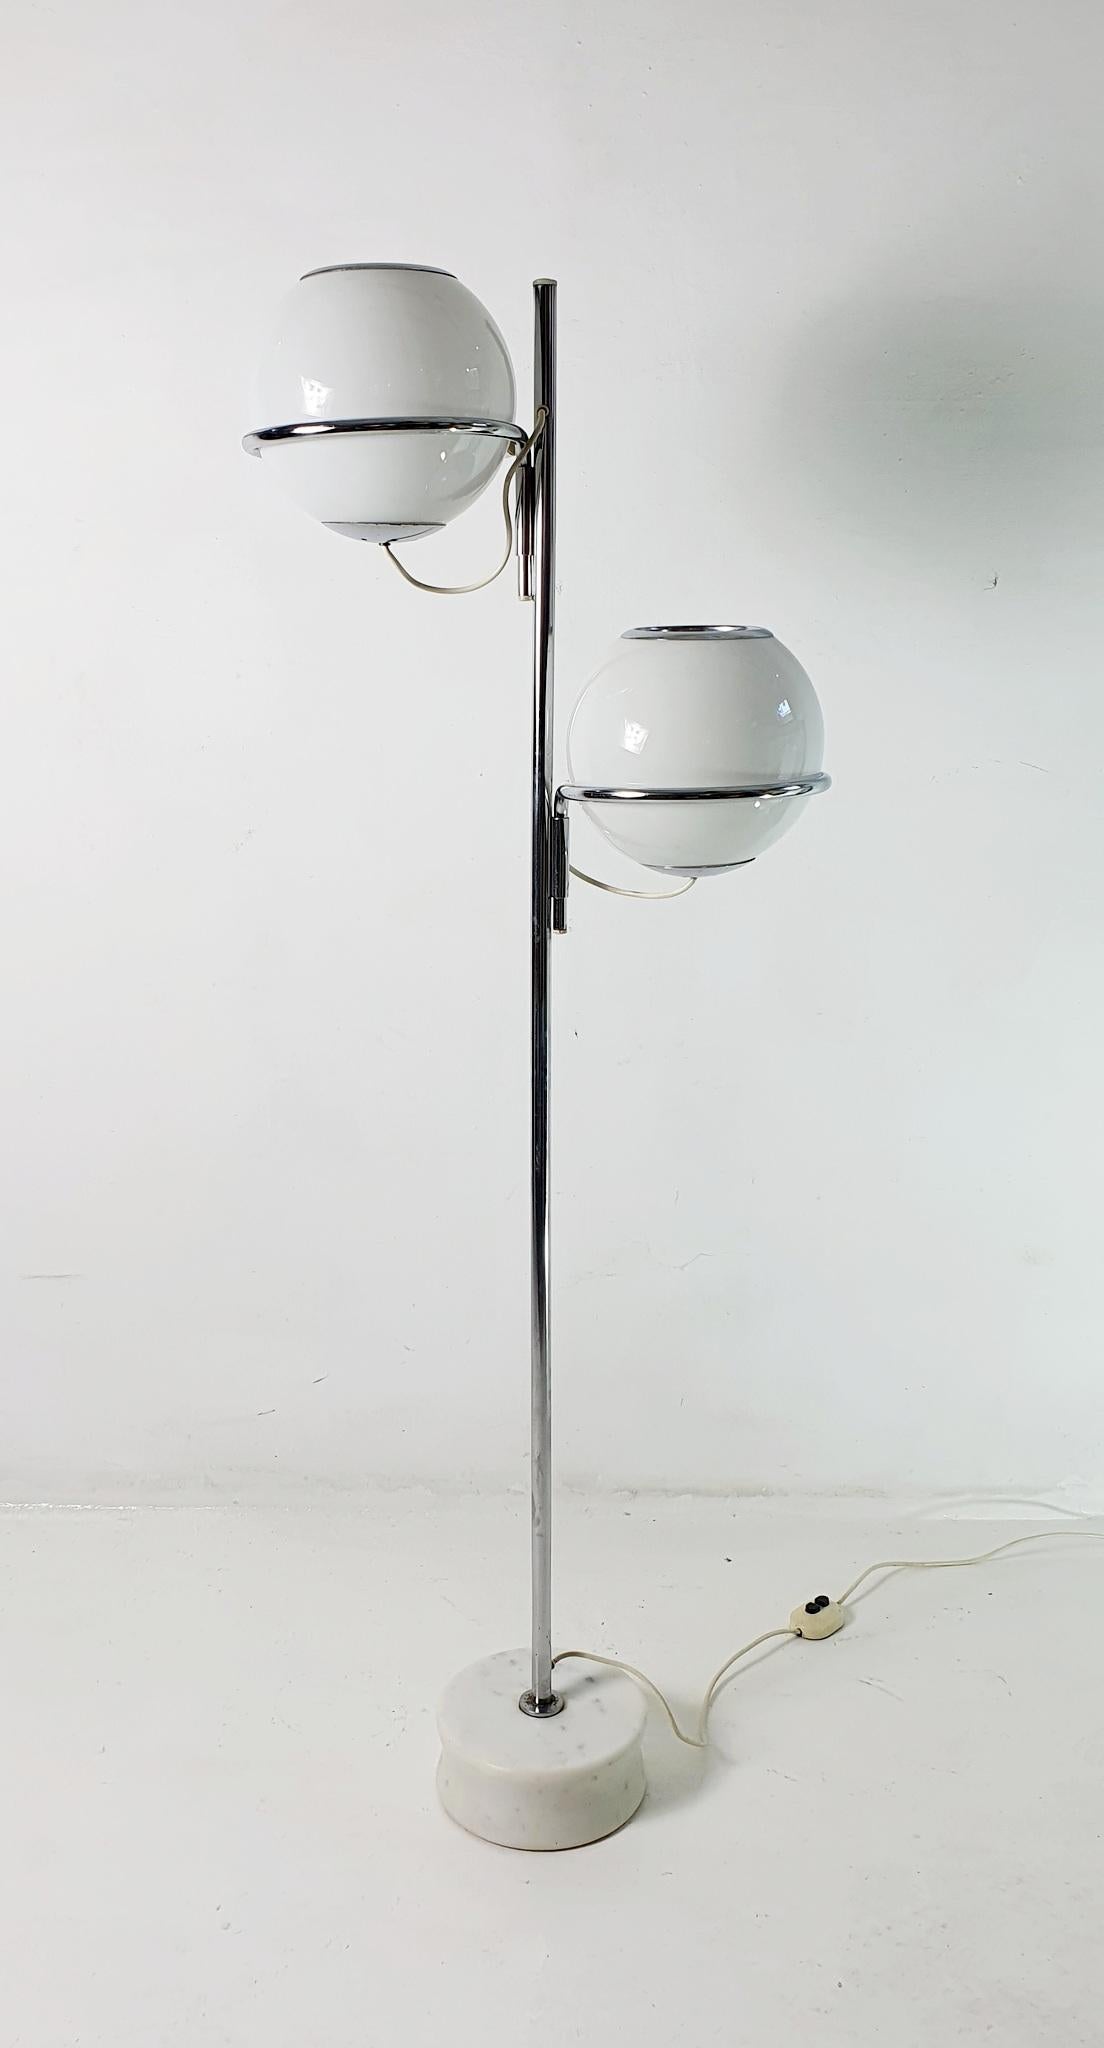 Es handelt sich um eine originale Stehleuchte Modell 1094 von Gino Sarfatti (1912-1985), die 1969 für Arteluce entworfen wurde.
Sie besteht aus einem Sockel aus Carrara-Marmor mit einer verchromten Stahlstruktur und unabhängig voneinander